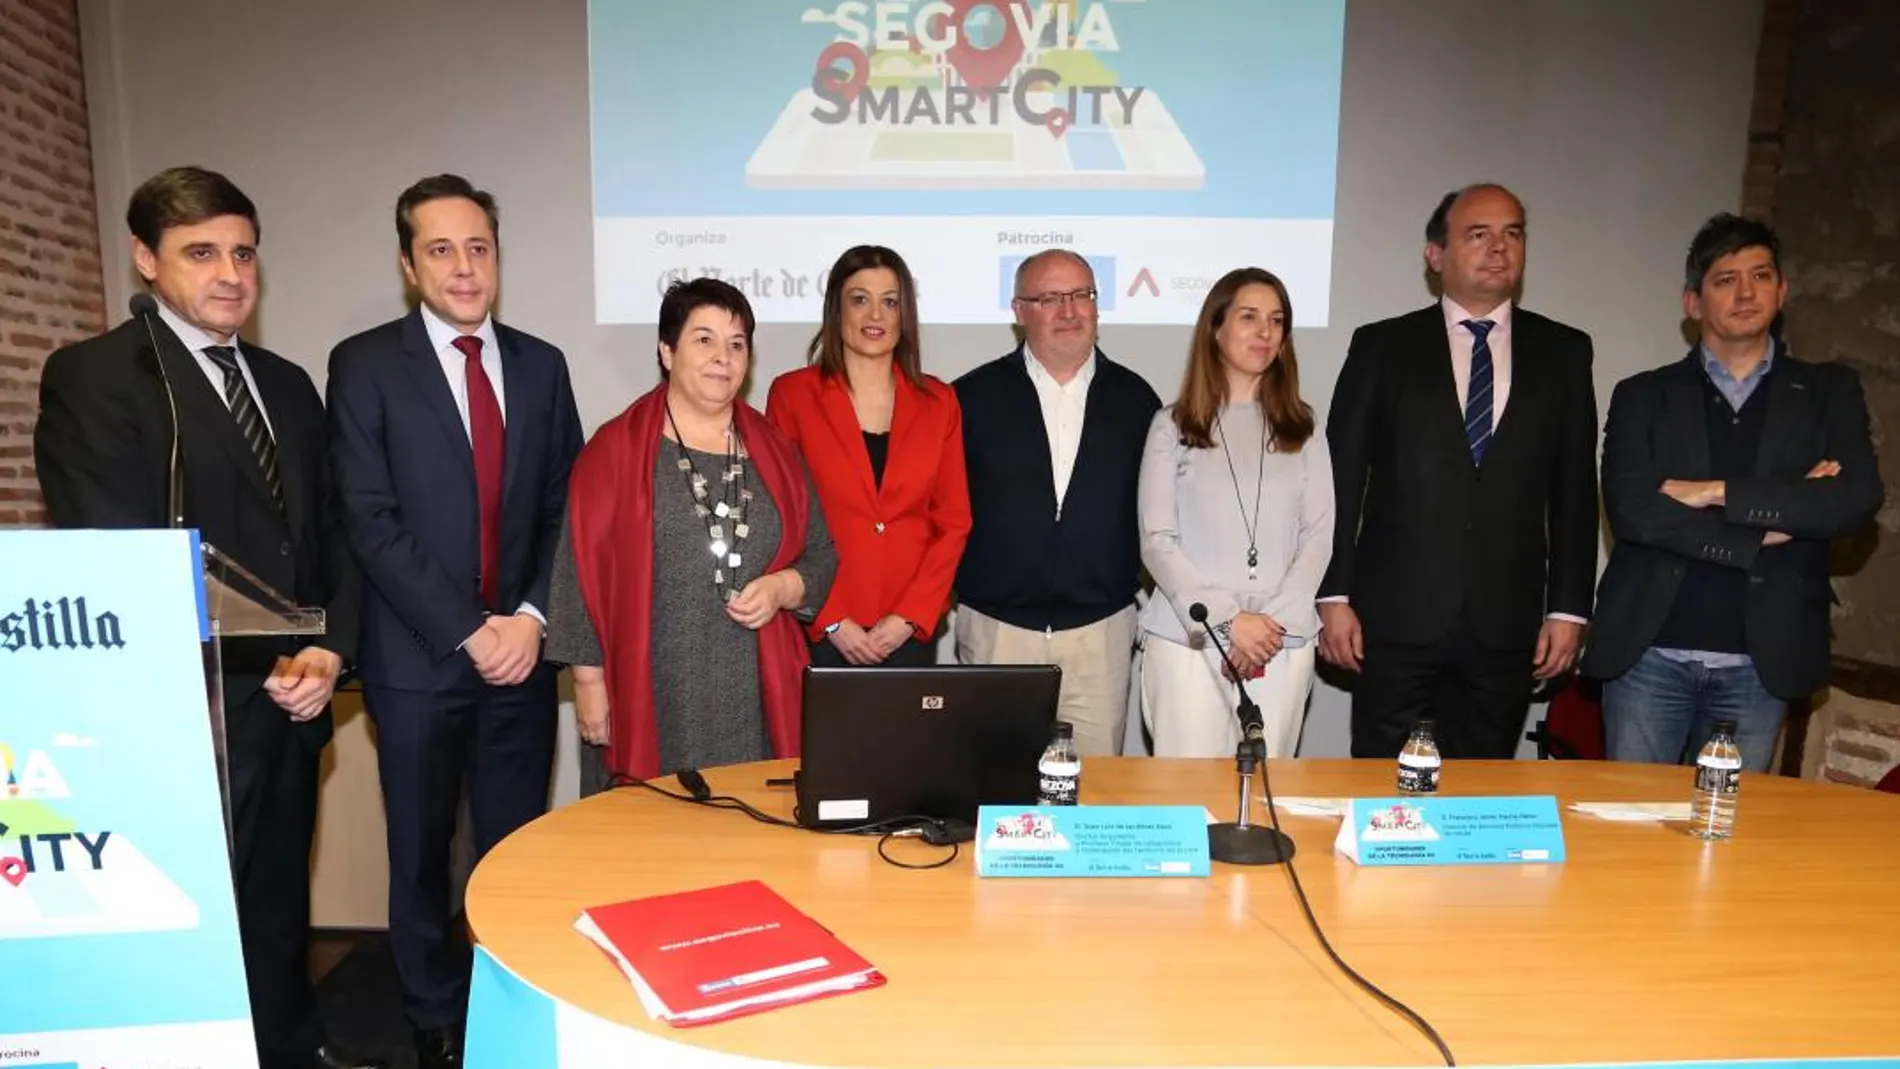 La alcaldesa de Segovia, Clara Luquero, junto con el director de Ciudades Inteligentes de Red.es, Francisco Javier García, y Mercedes Fernández, entre otros, en el Foro «Segovia Smart City»